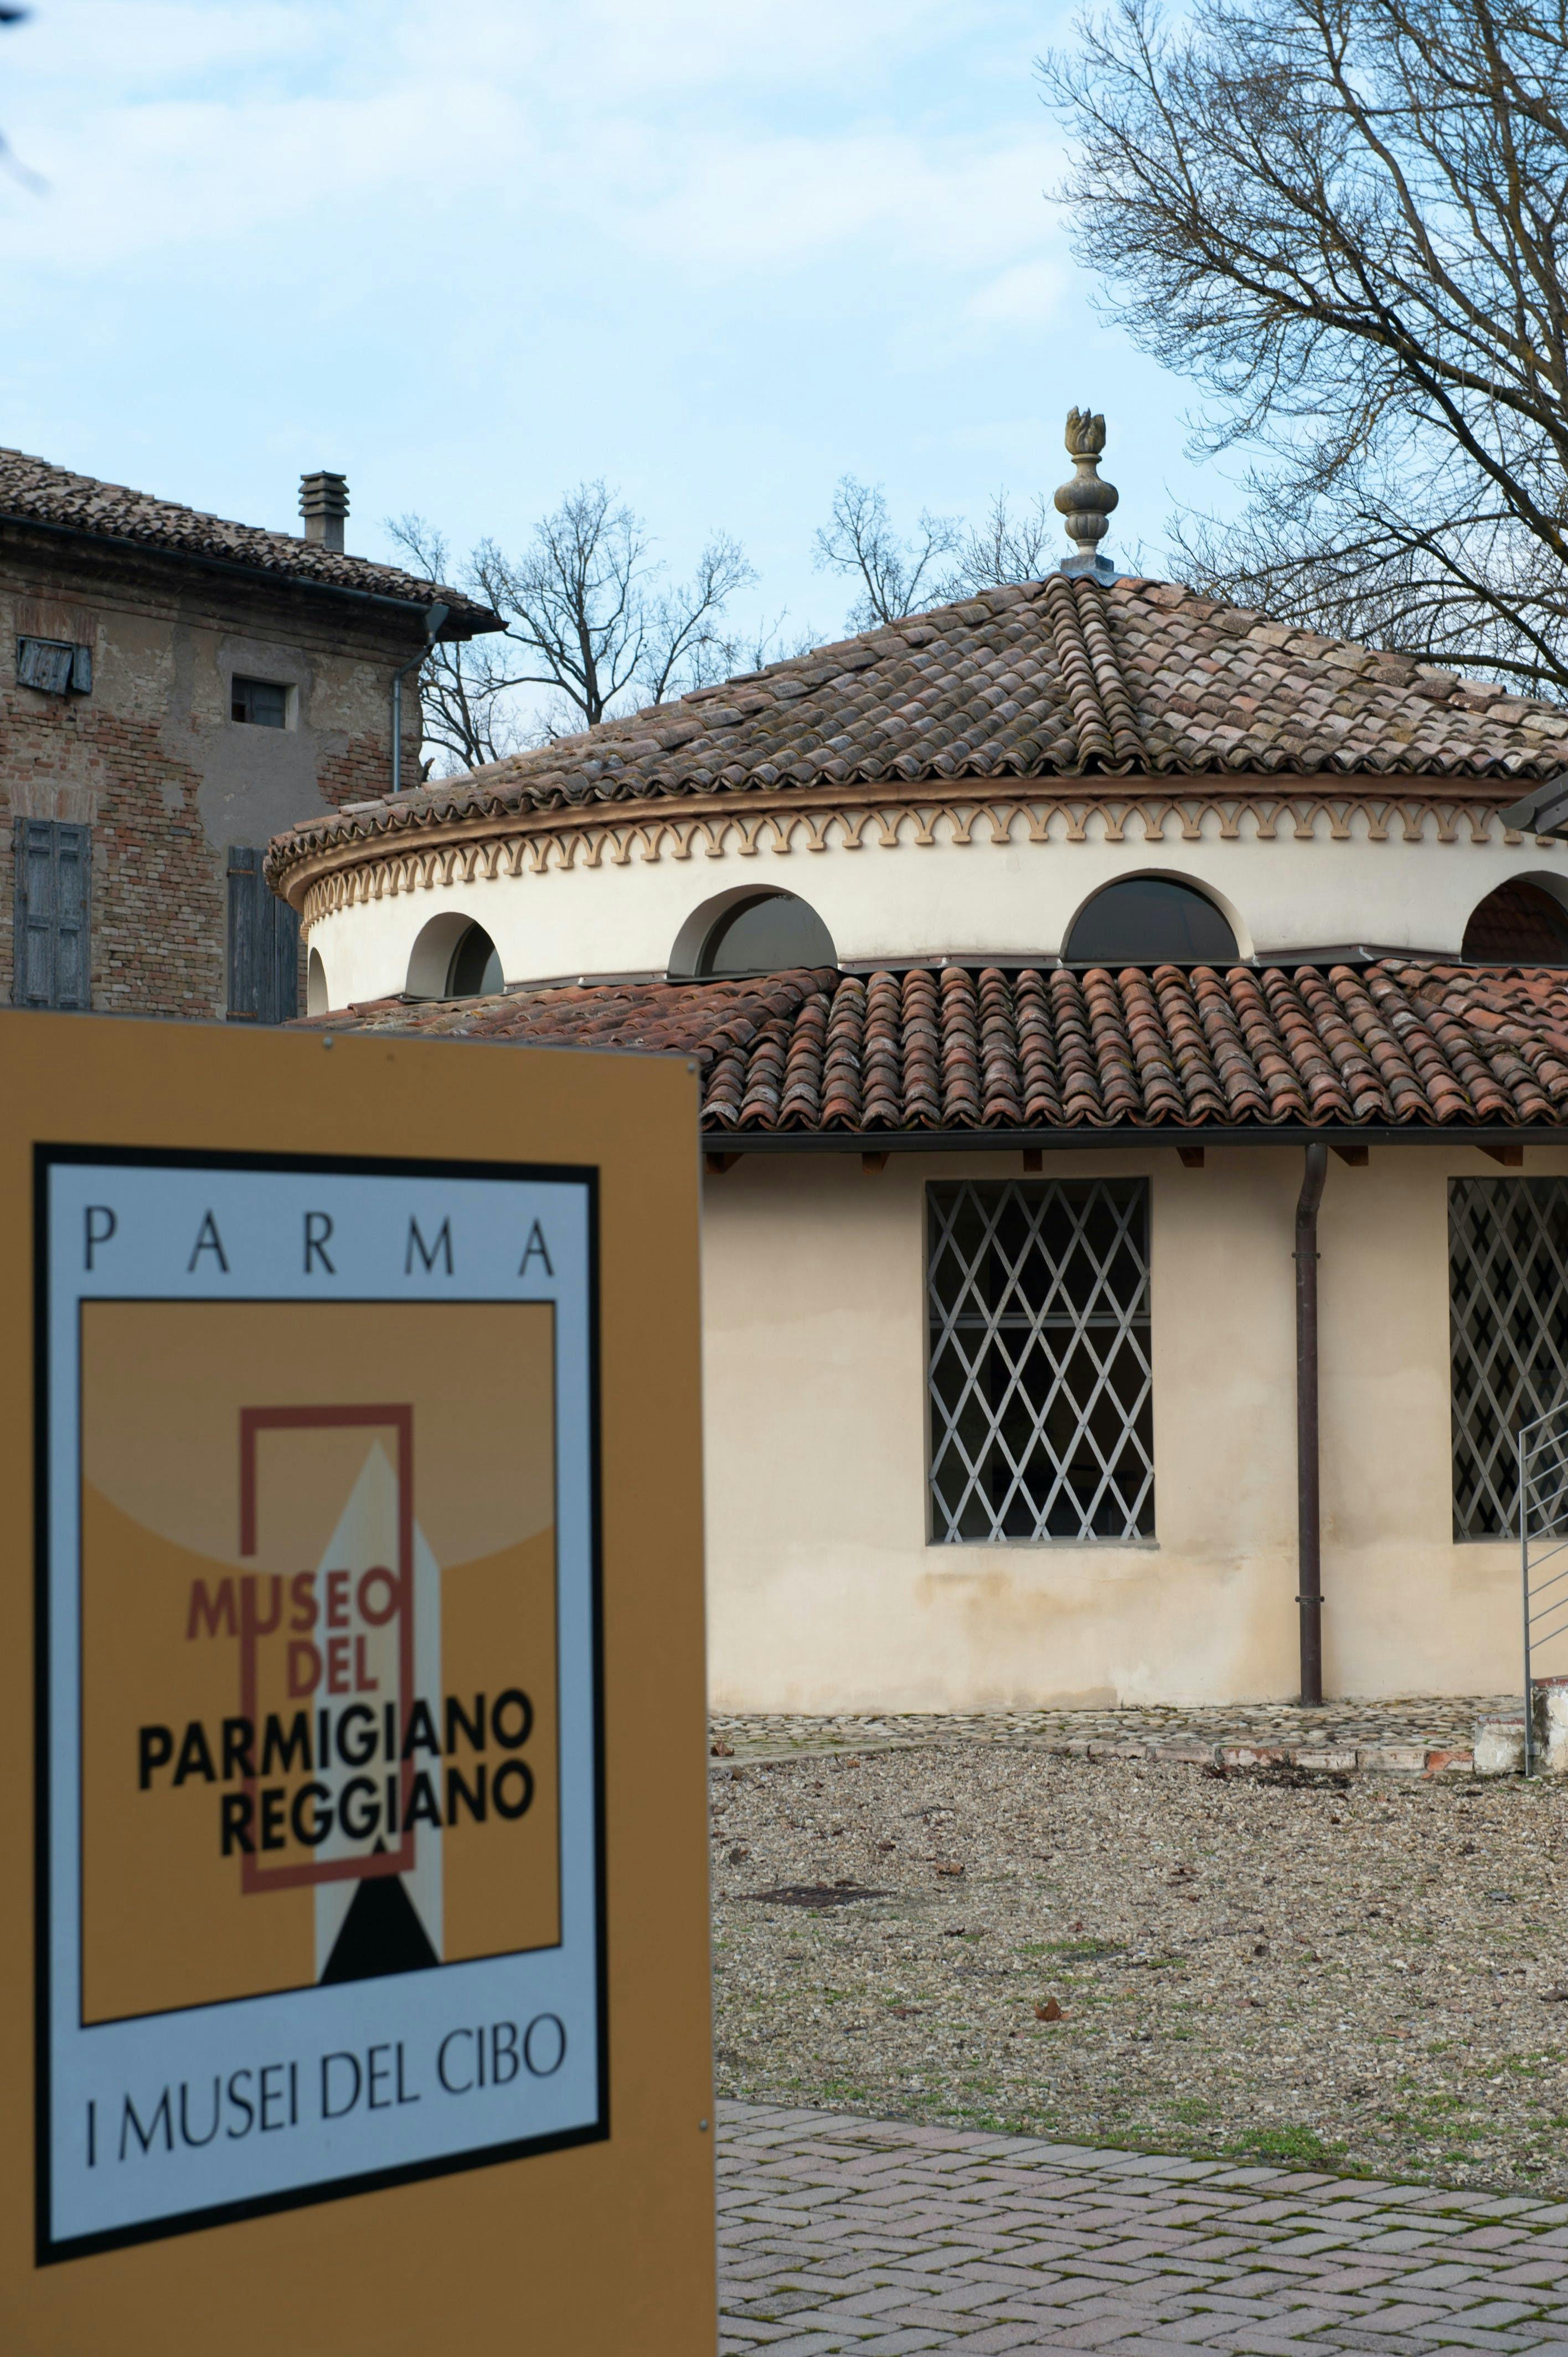 04 - Museo del Parmigiano Reggiano - Soragna (PR) (Foto L. Rossi)_DSC4231 copia 2.jpg.jpeg